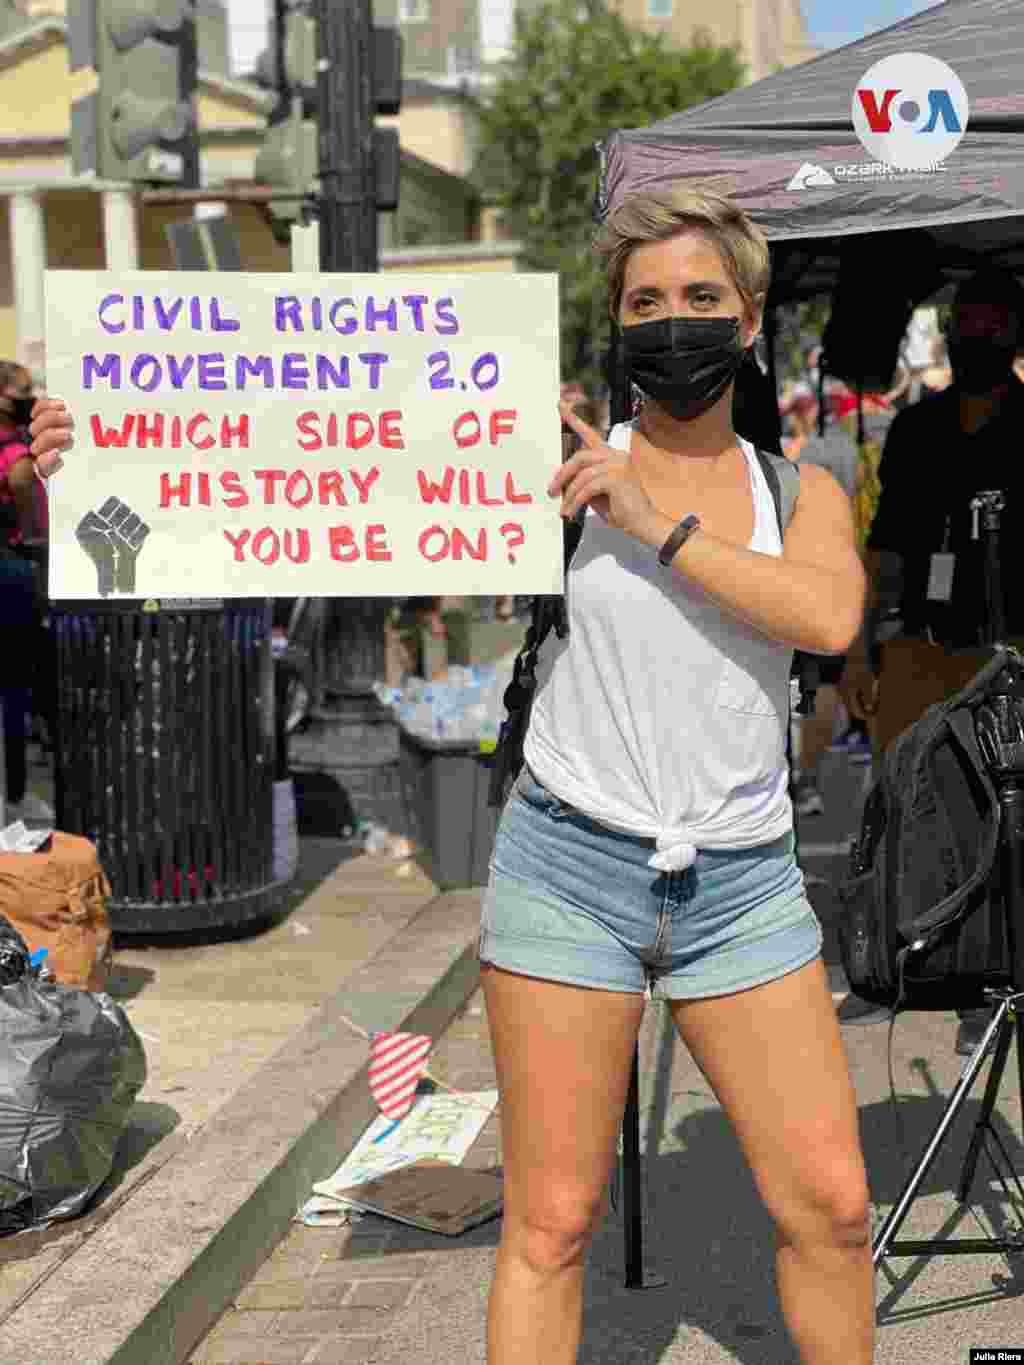 Movimiento de los derechos civiles, versi&#243;n 2 &#191;En qu&#233; lado de la historia estar&#225;s?, dice el cartel de esta manifestante en una protesta el s&#225;bado 6 de junio de 2020 en Washington, D.C.